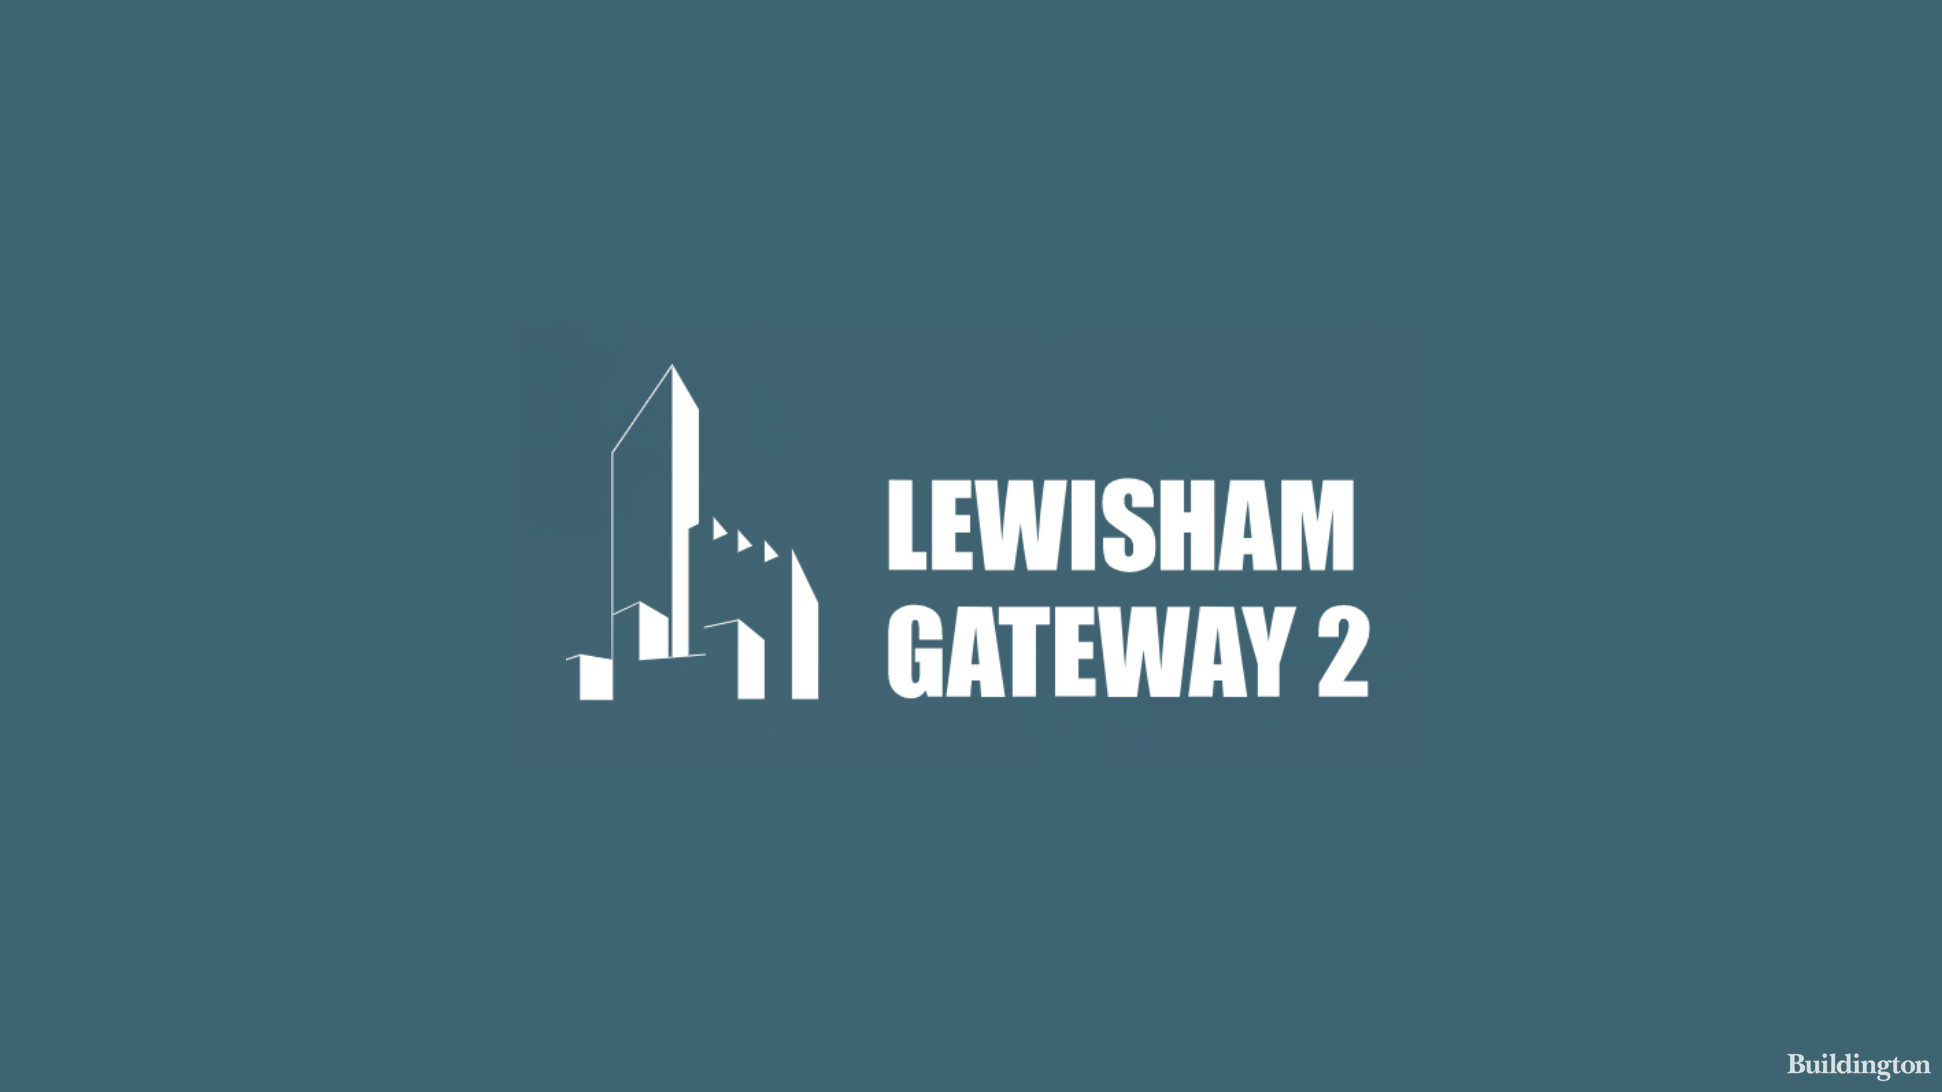 Lewisham Gateway 2